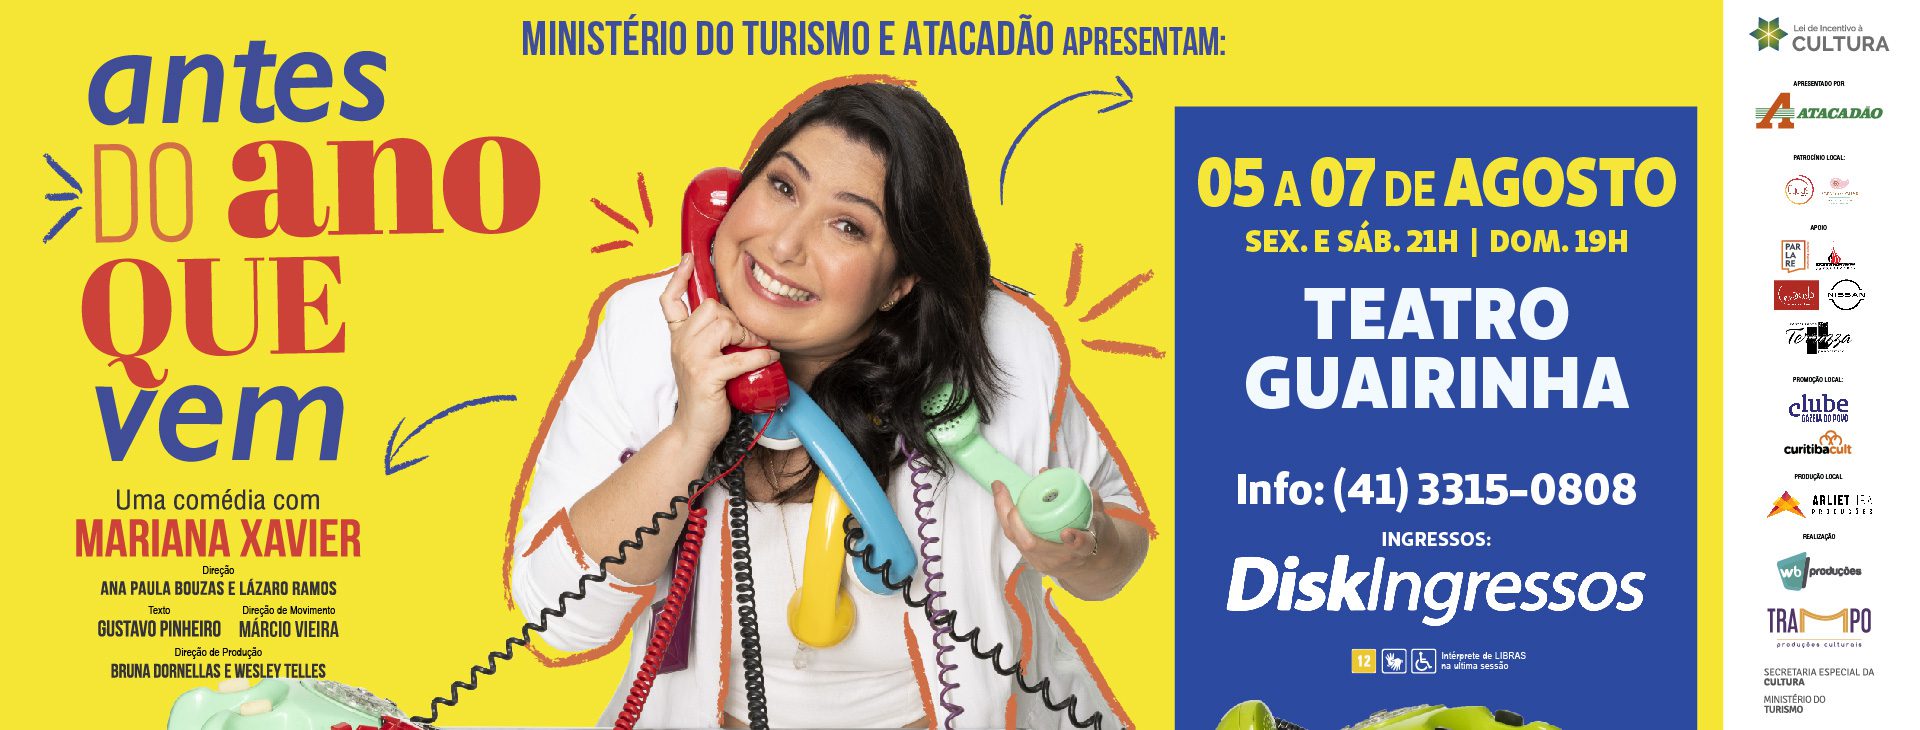 Peças Digitais - Curitiba_BANNER SITE